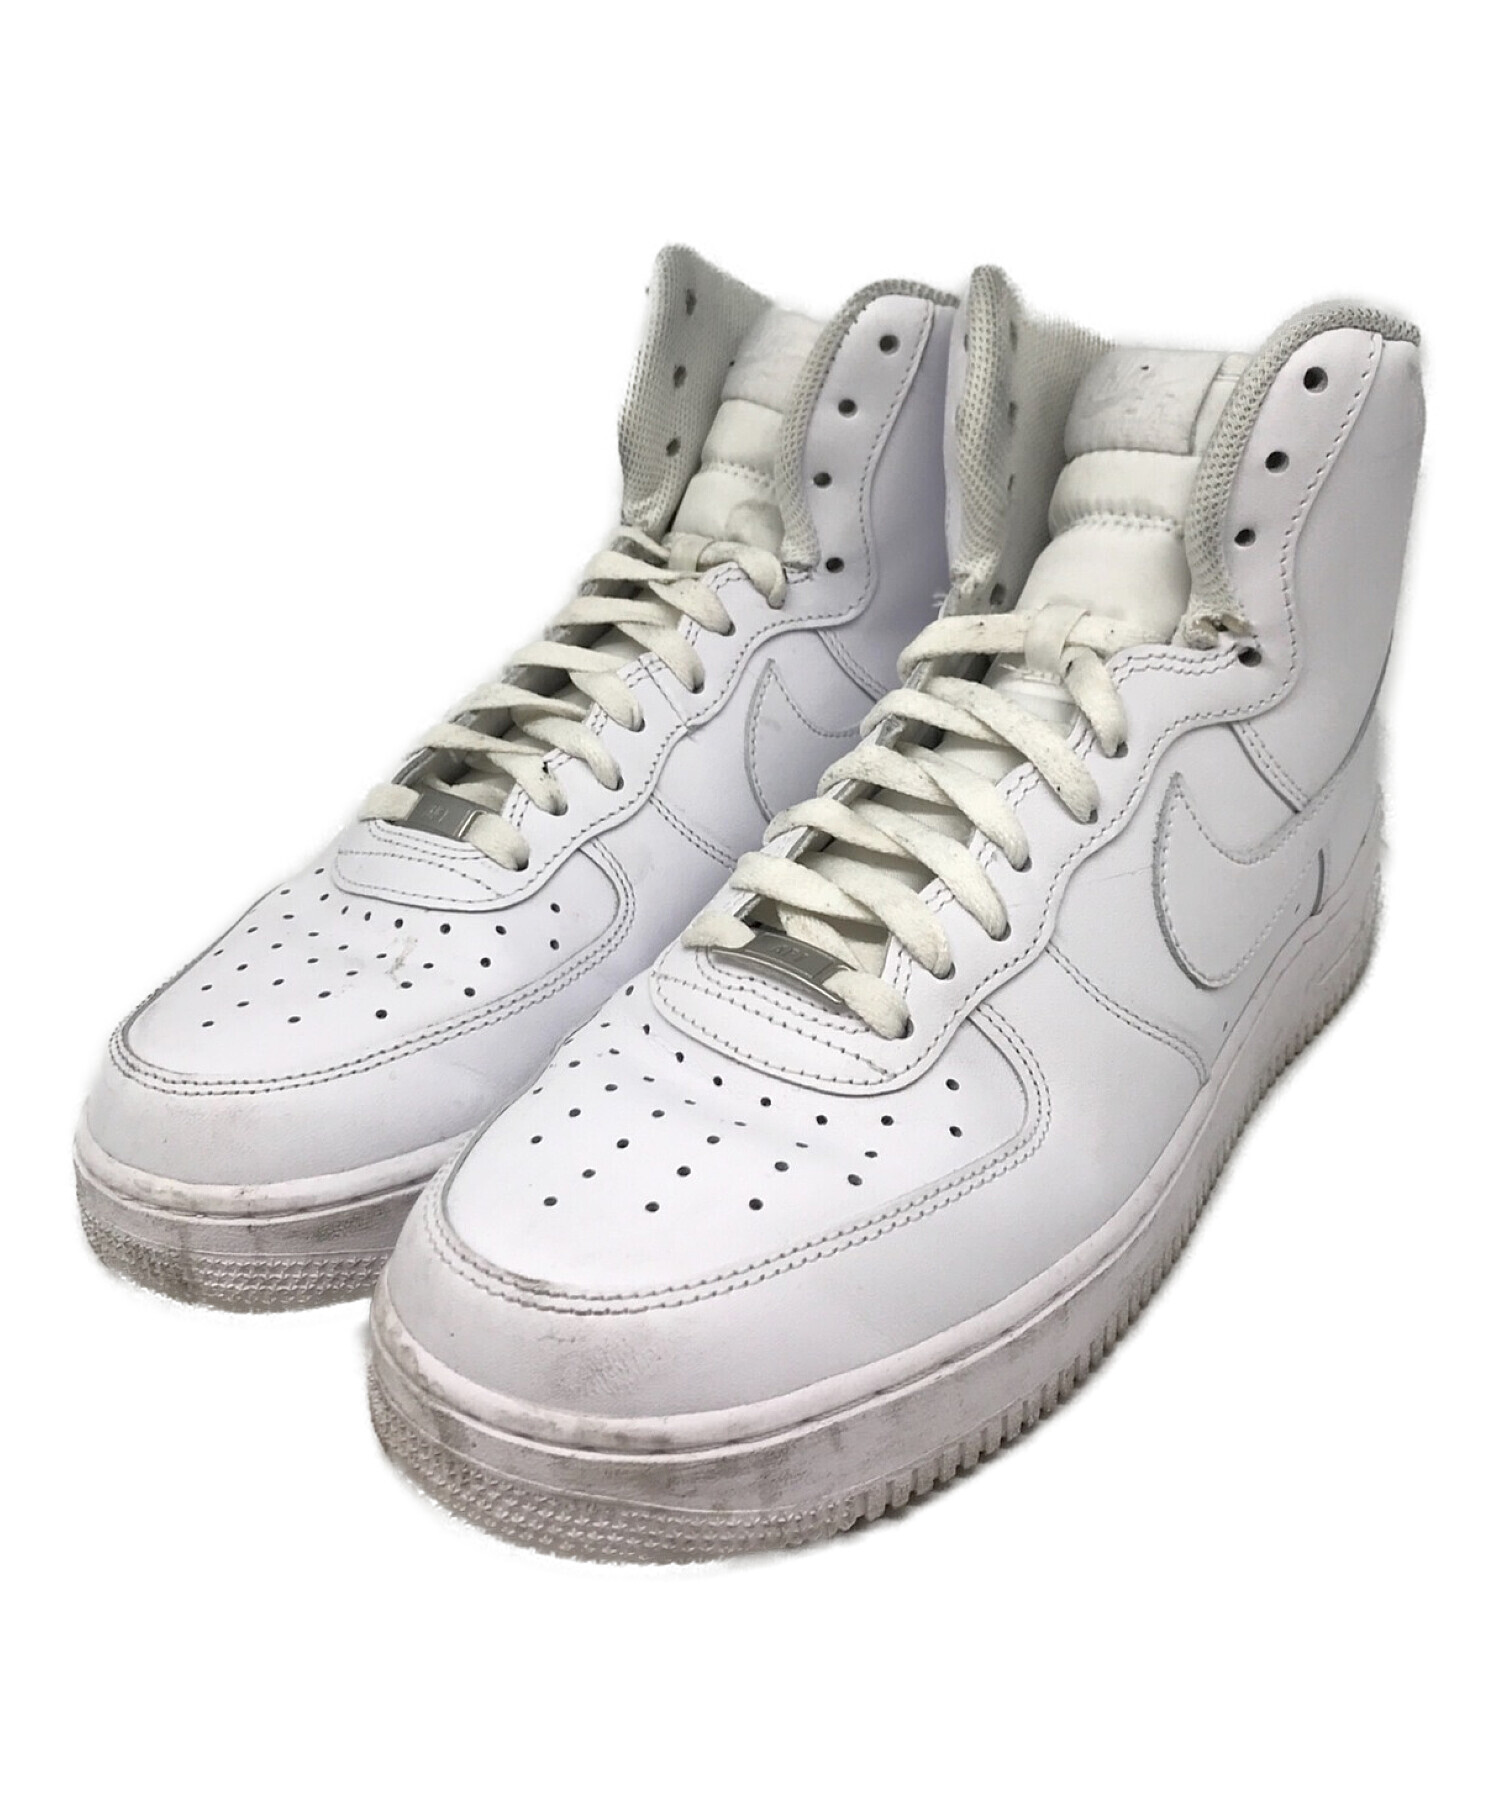 Air Force 1 High Premium 'Yankees' - Nike - 332490 111 - white